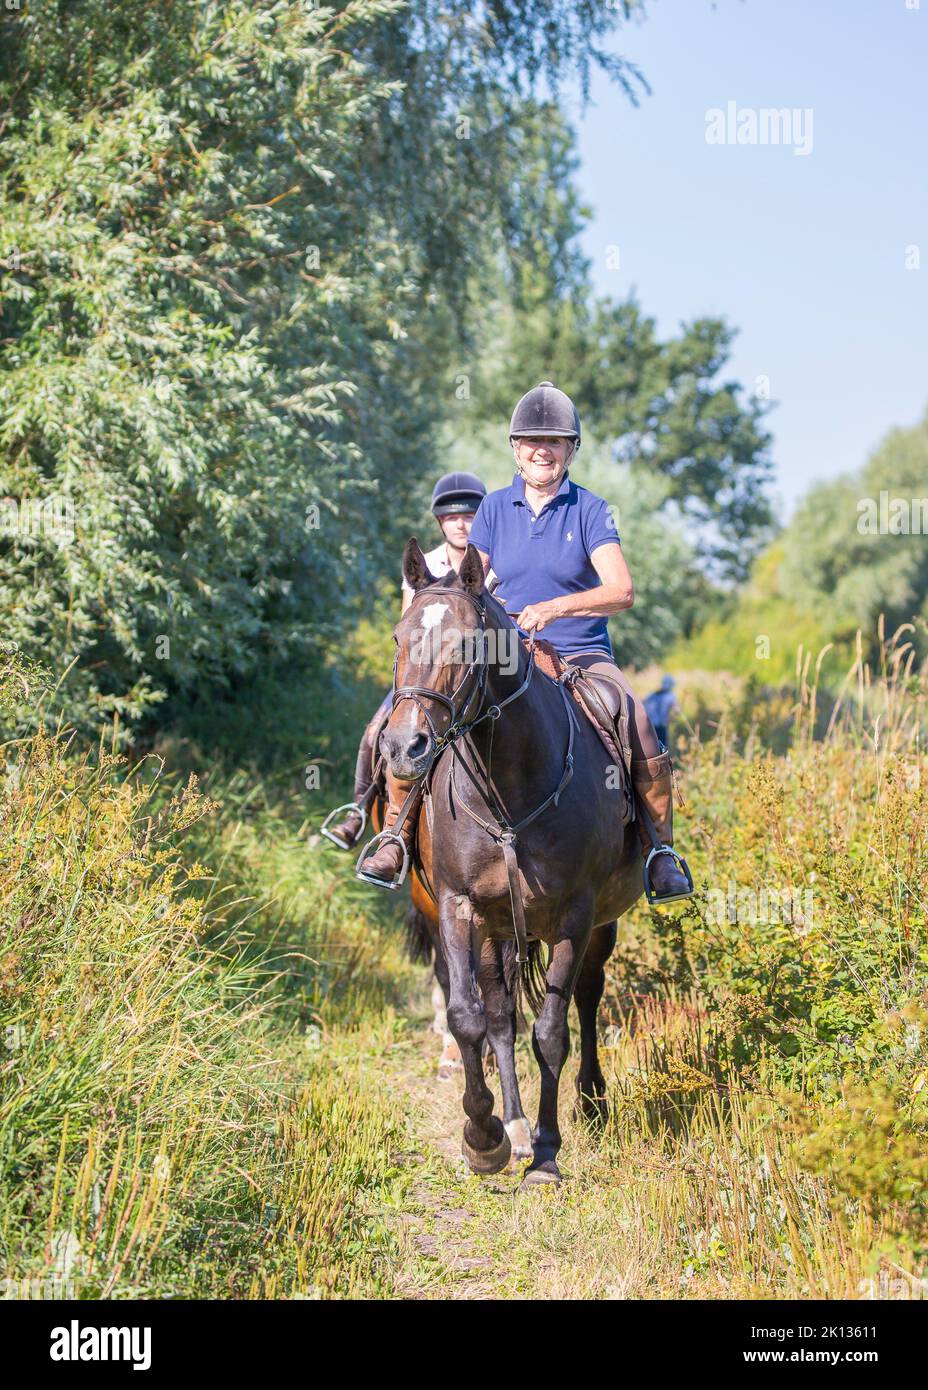 Vue de face d'une dame rider souriante sur un cheval sur un sentier de campagne du Royaume-Uni, promenade sur une chaude journée d'été. Banque D'Images